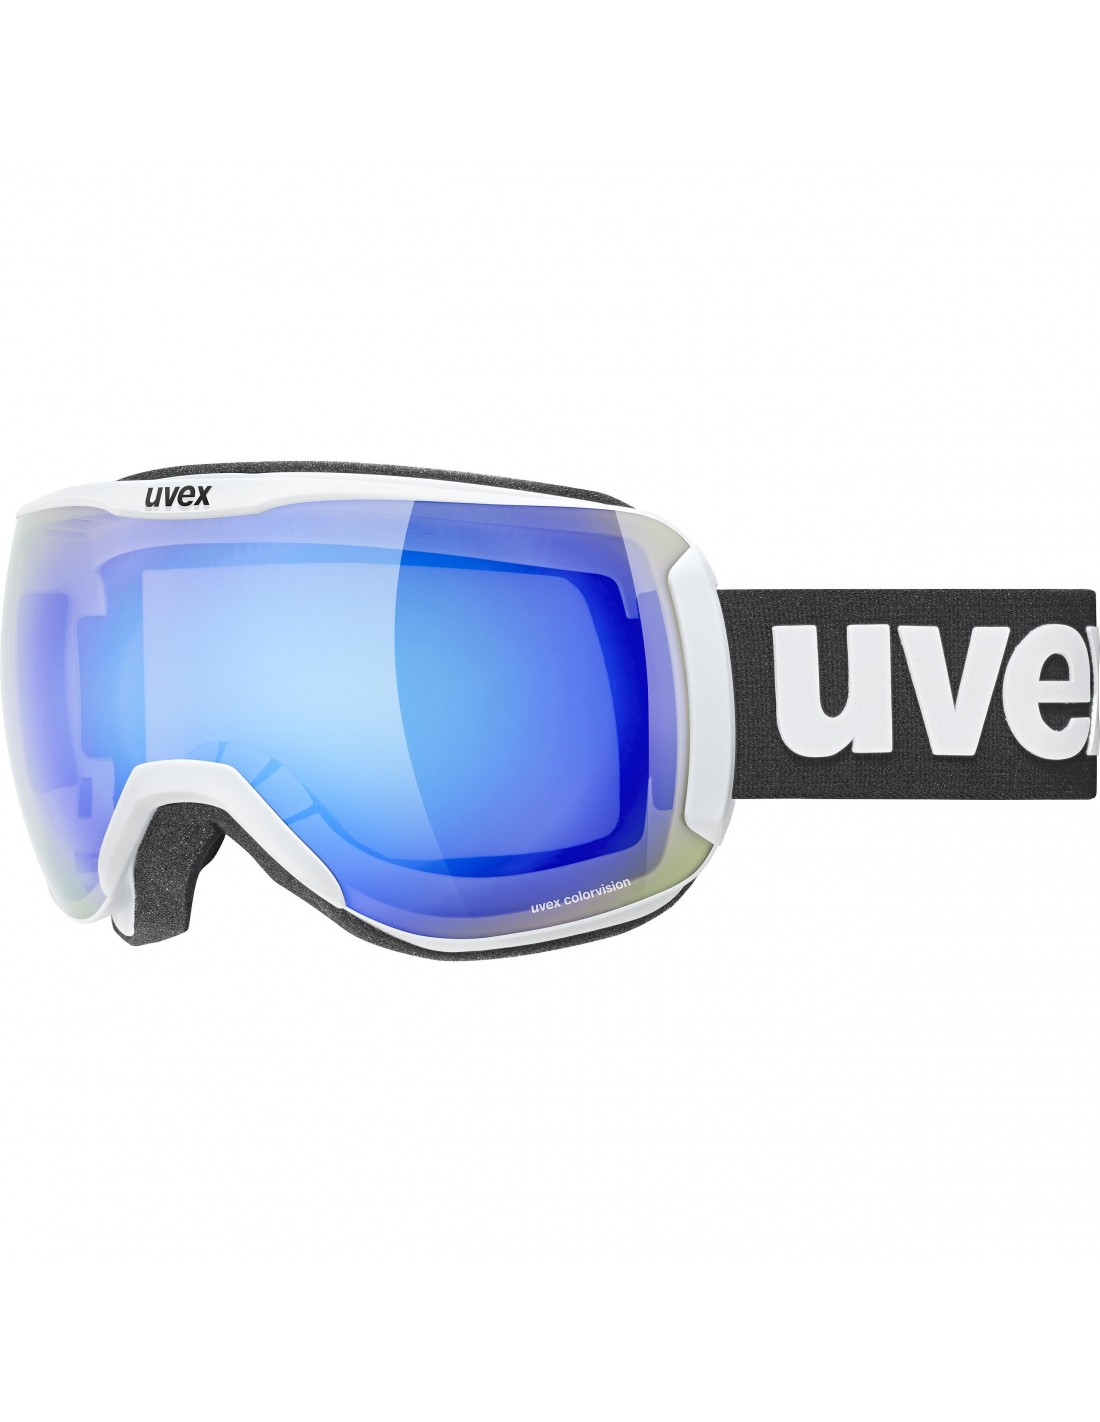 Uvex Skibrille Downhill 2100 CV, white matt, mirror blue S2, colorvision green von Uvex